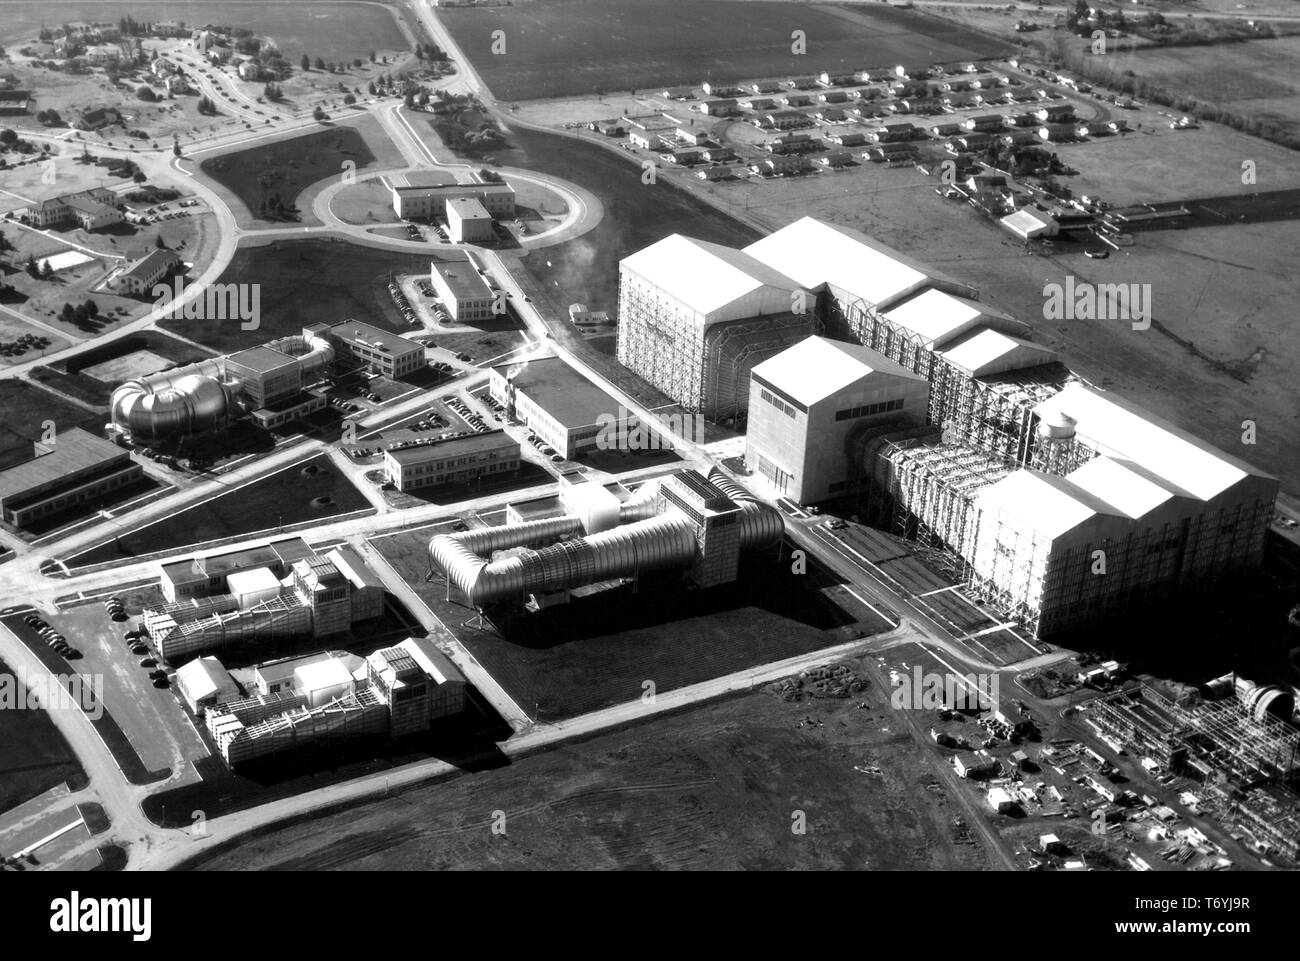 Fotografia aerea del comitato consultivo nazionale per l'aeronautica (NACA) Ames Aeronautical Laboratory di Moffett Field, California, 11 febbraio 1947. Immagine cortesia Nazionale Aeronautica e Spaziale Administration (NASA). () Foto Stock